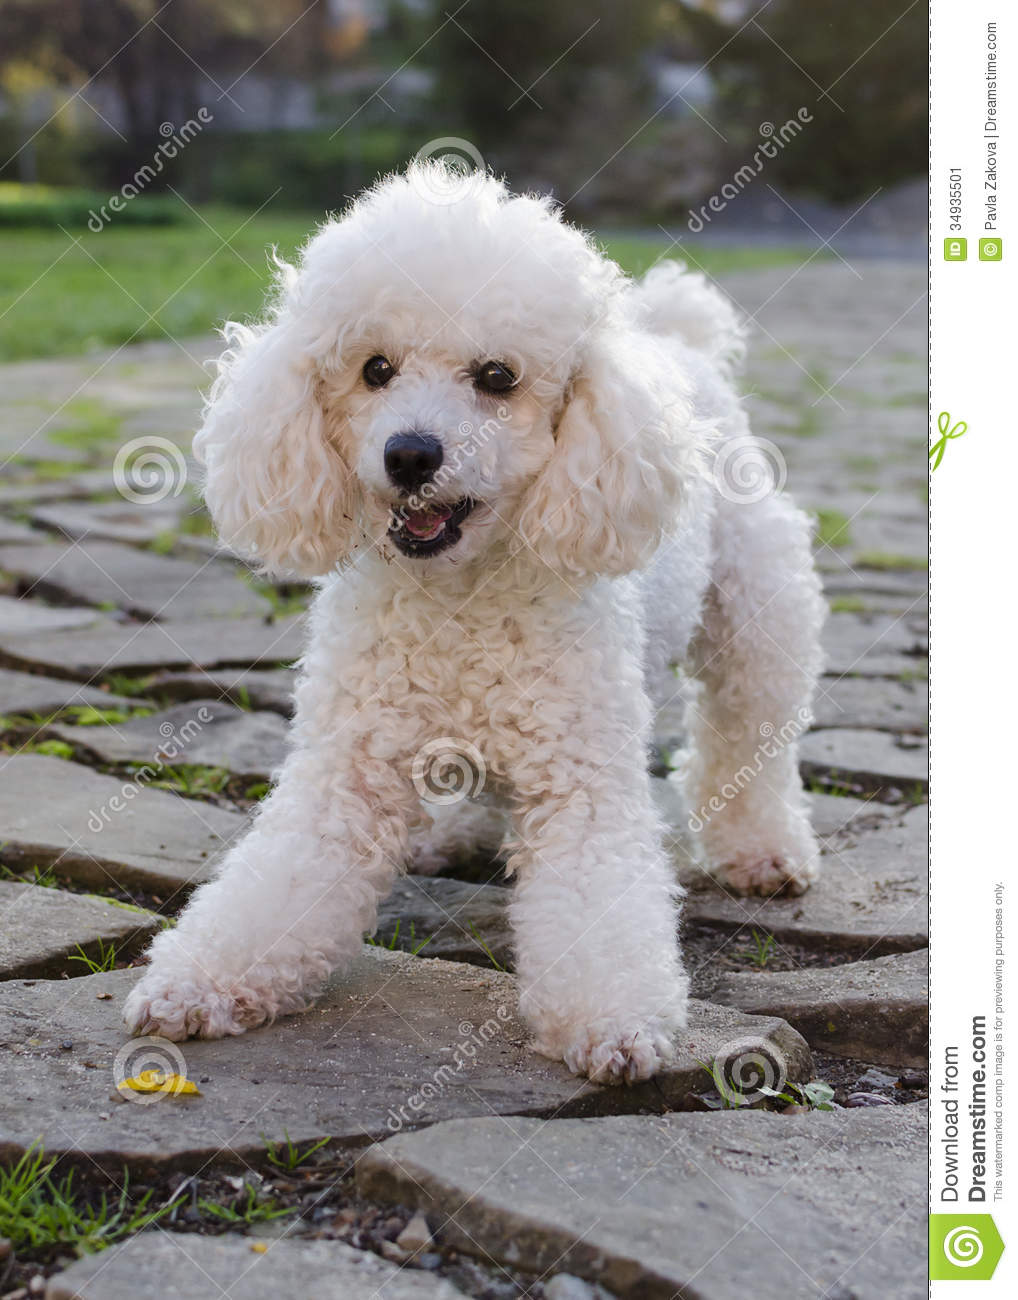 White Poodle Dog Image